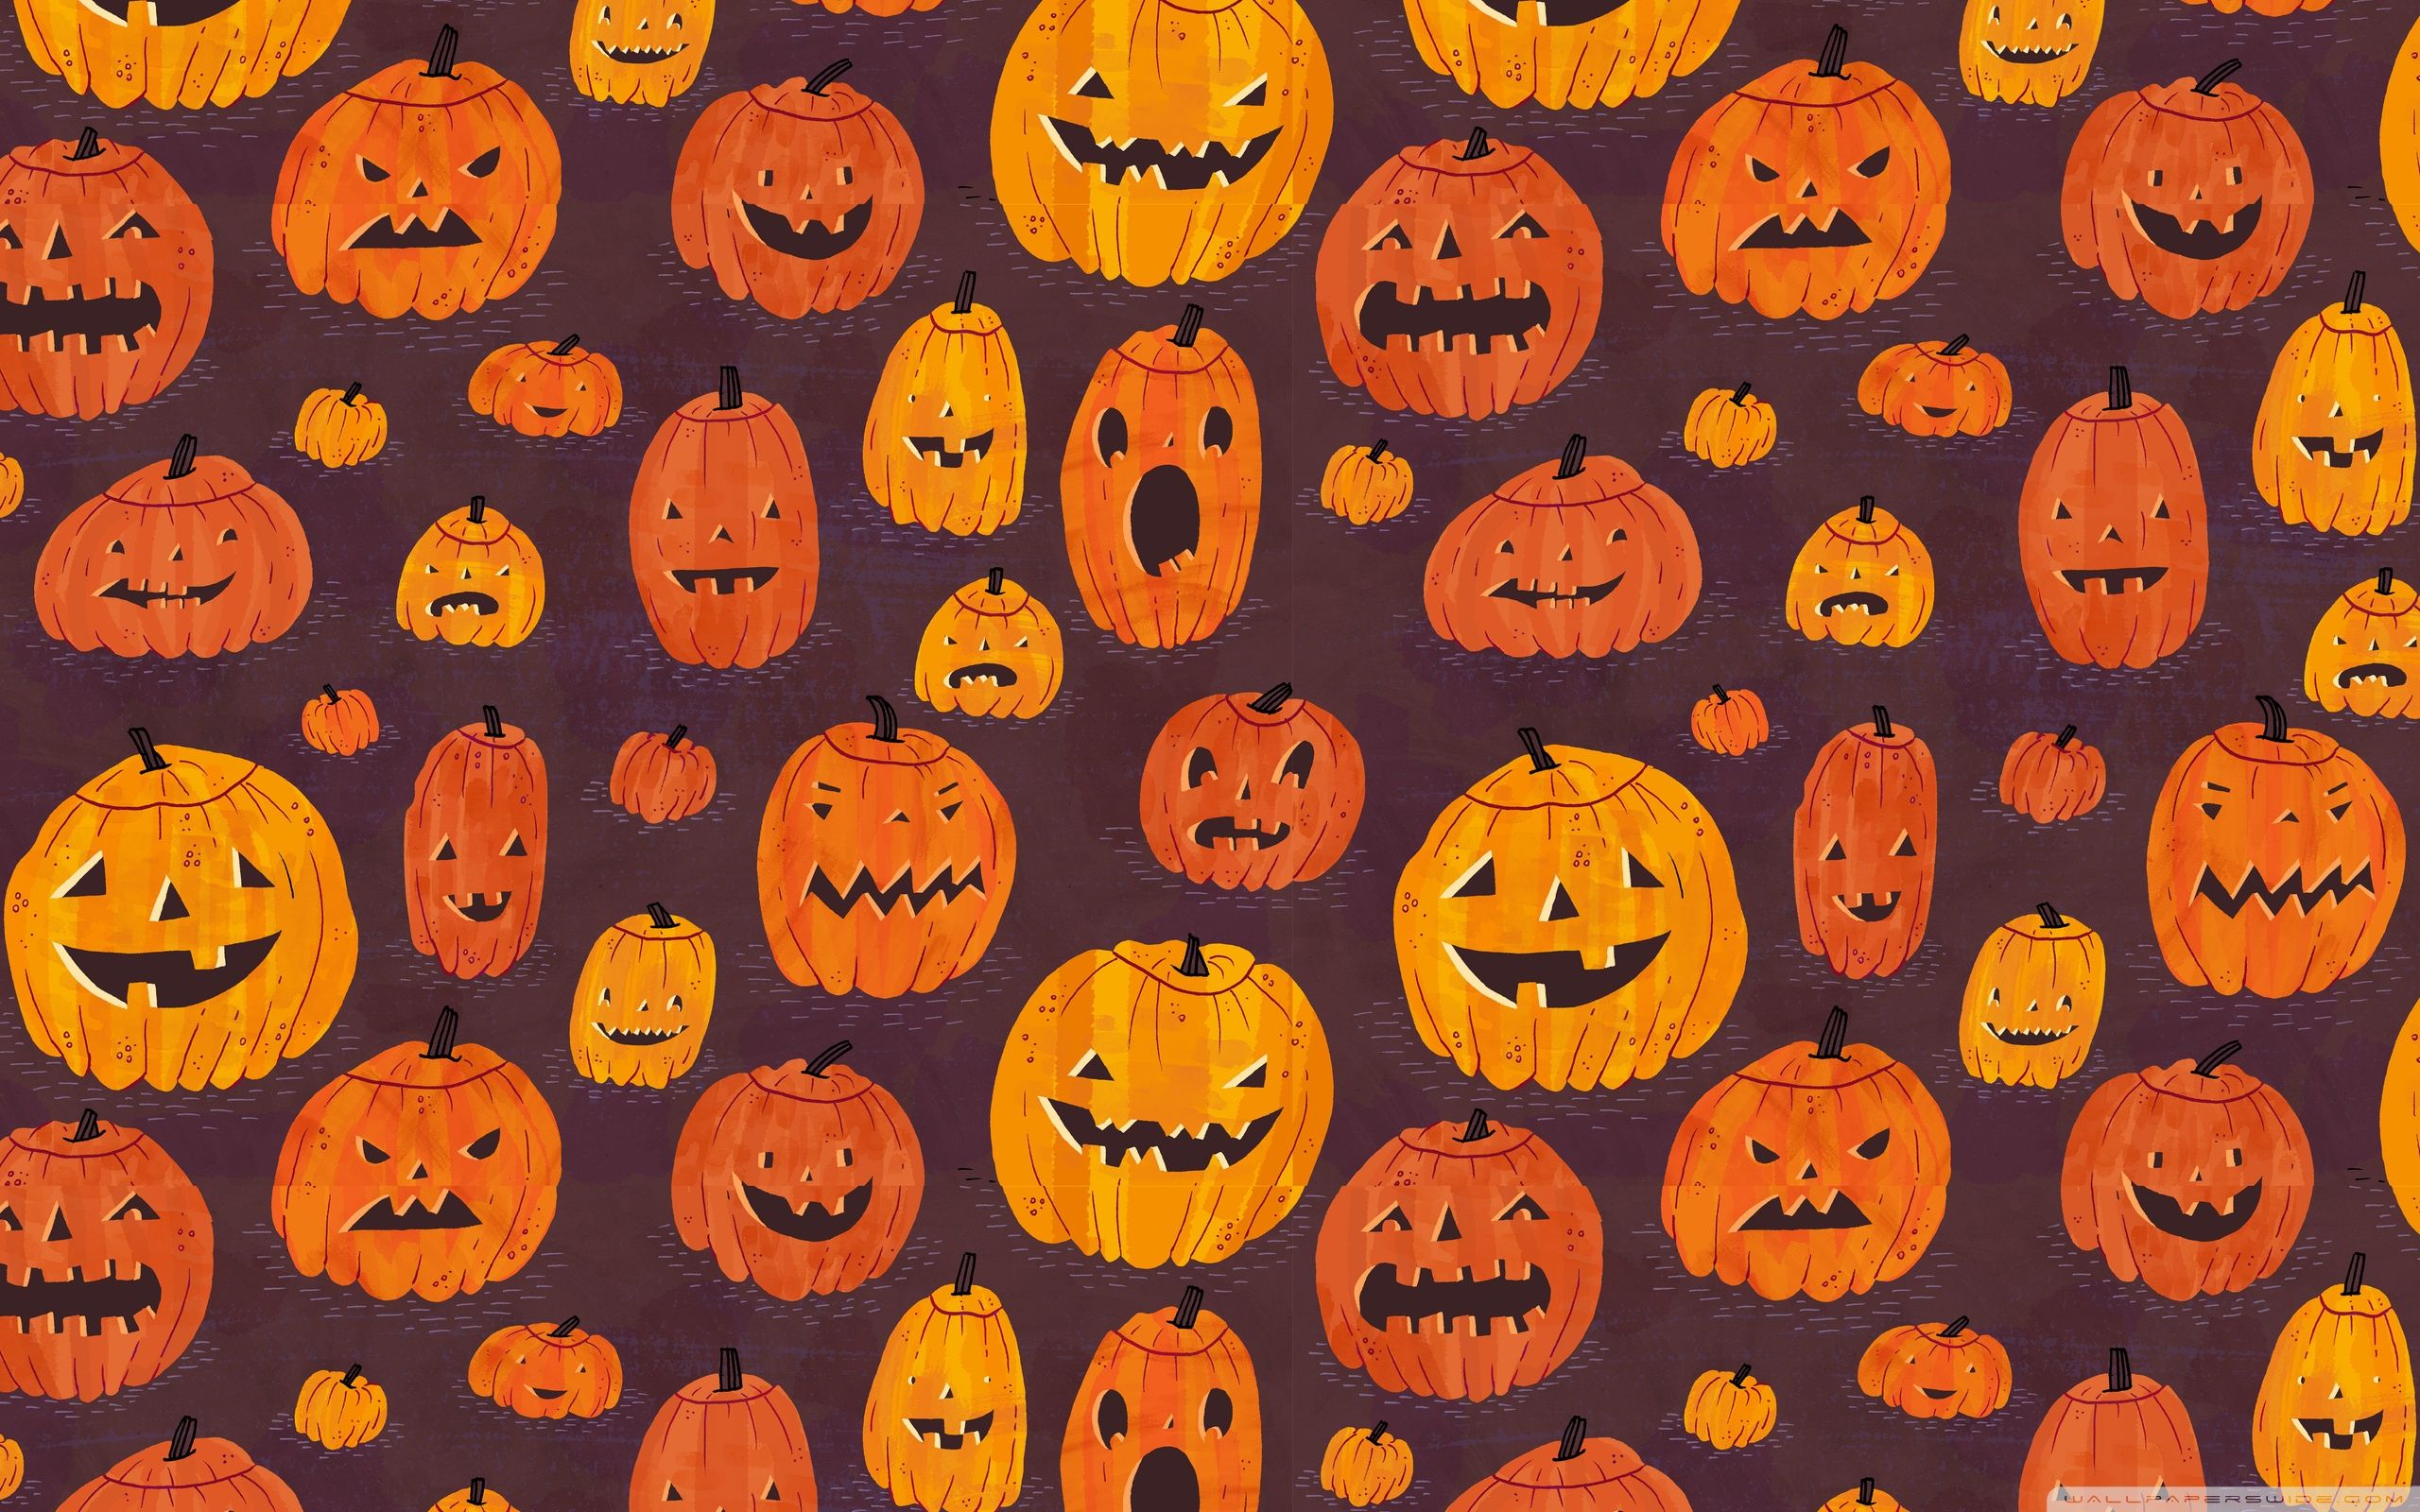 Halloween Puter Wallpaper Top